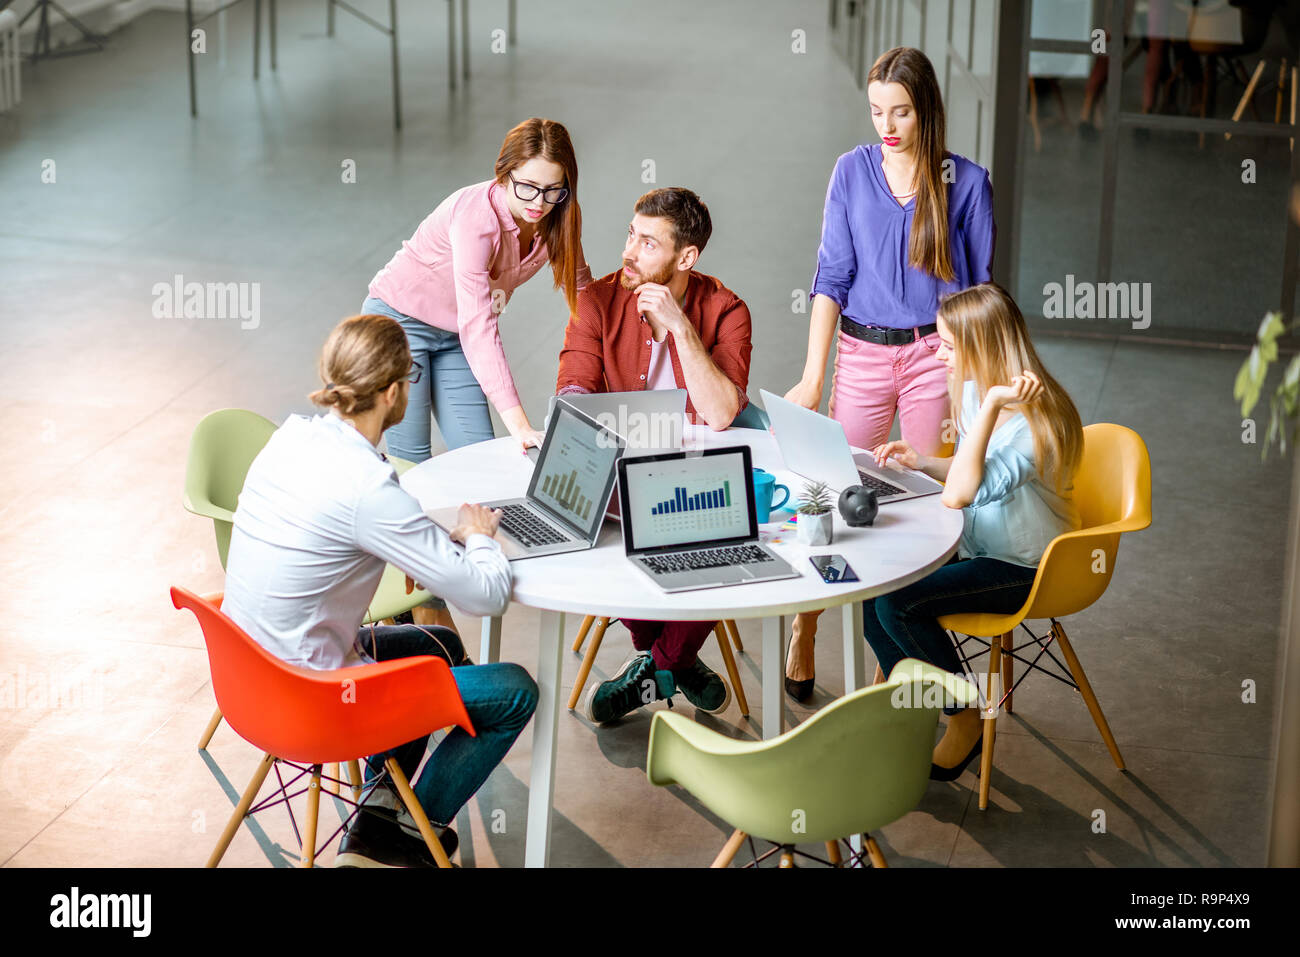 Une équipe de jeunes collègues habillés de désinvolture qui travaillent ensemble avec des ordinateurs portables assis à la table ronde de l'office Banque D'Images